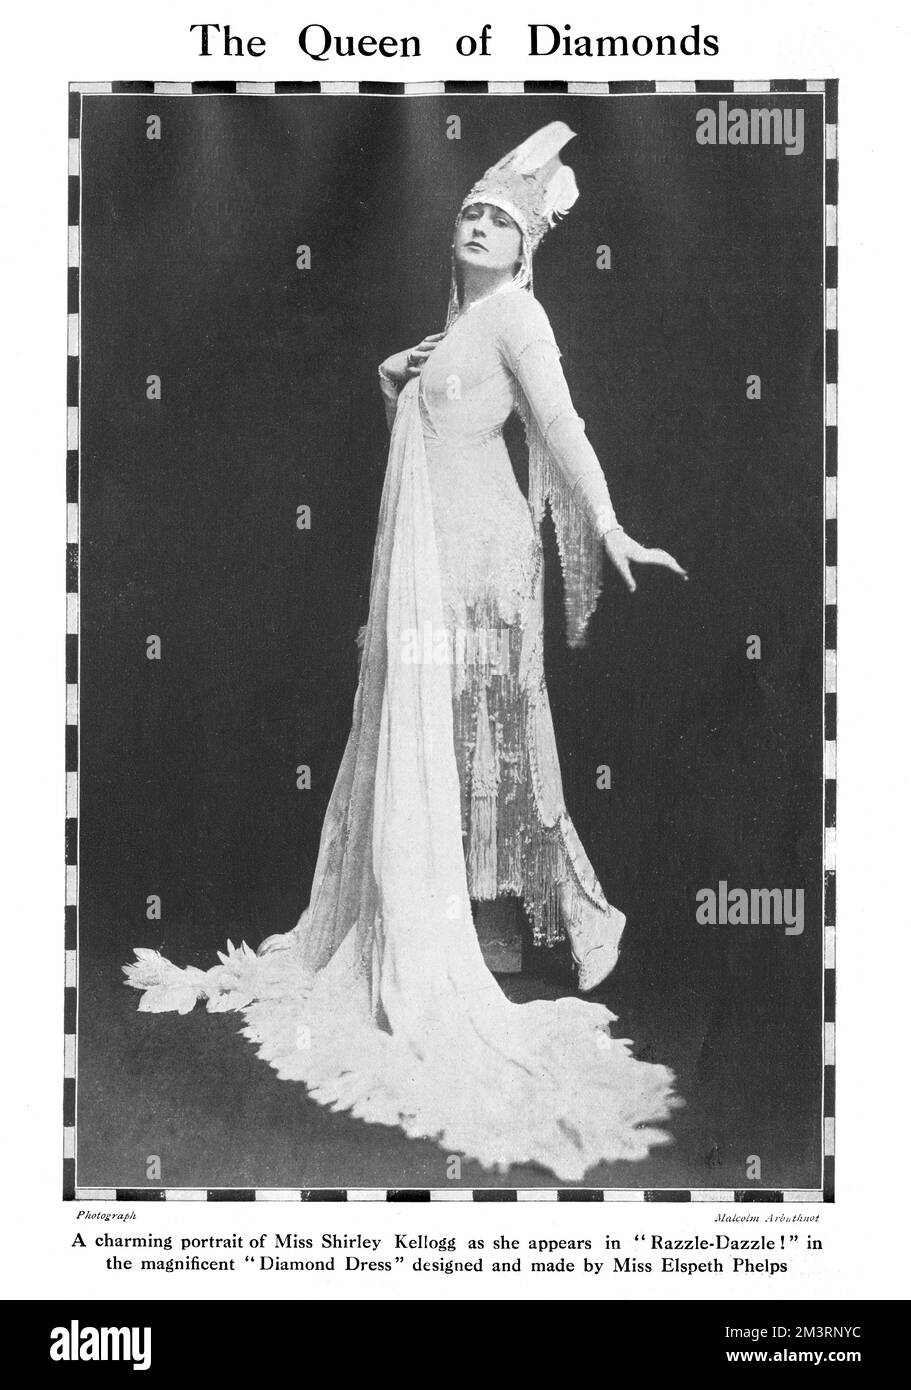 Die Schauspielerin Shirley Kellogg trug ein exquisites Kleid mit Fransen aus Pear de Soie, verziert mit Silber und Diamanten, das Hauptkostüm in der Theatershow, Razzle Dazzle, inszeniert im Theatre Royal, Drury Lane im Juli 1916. Das Kleid wurde von Elspeth Phelps aus der Albemarle Street 29 entworfen und hergestellt. Datum: 1916 Stockfoto